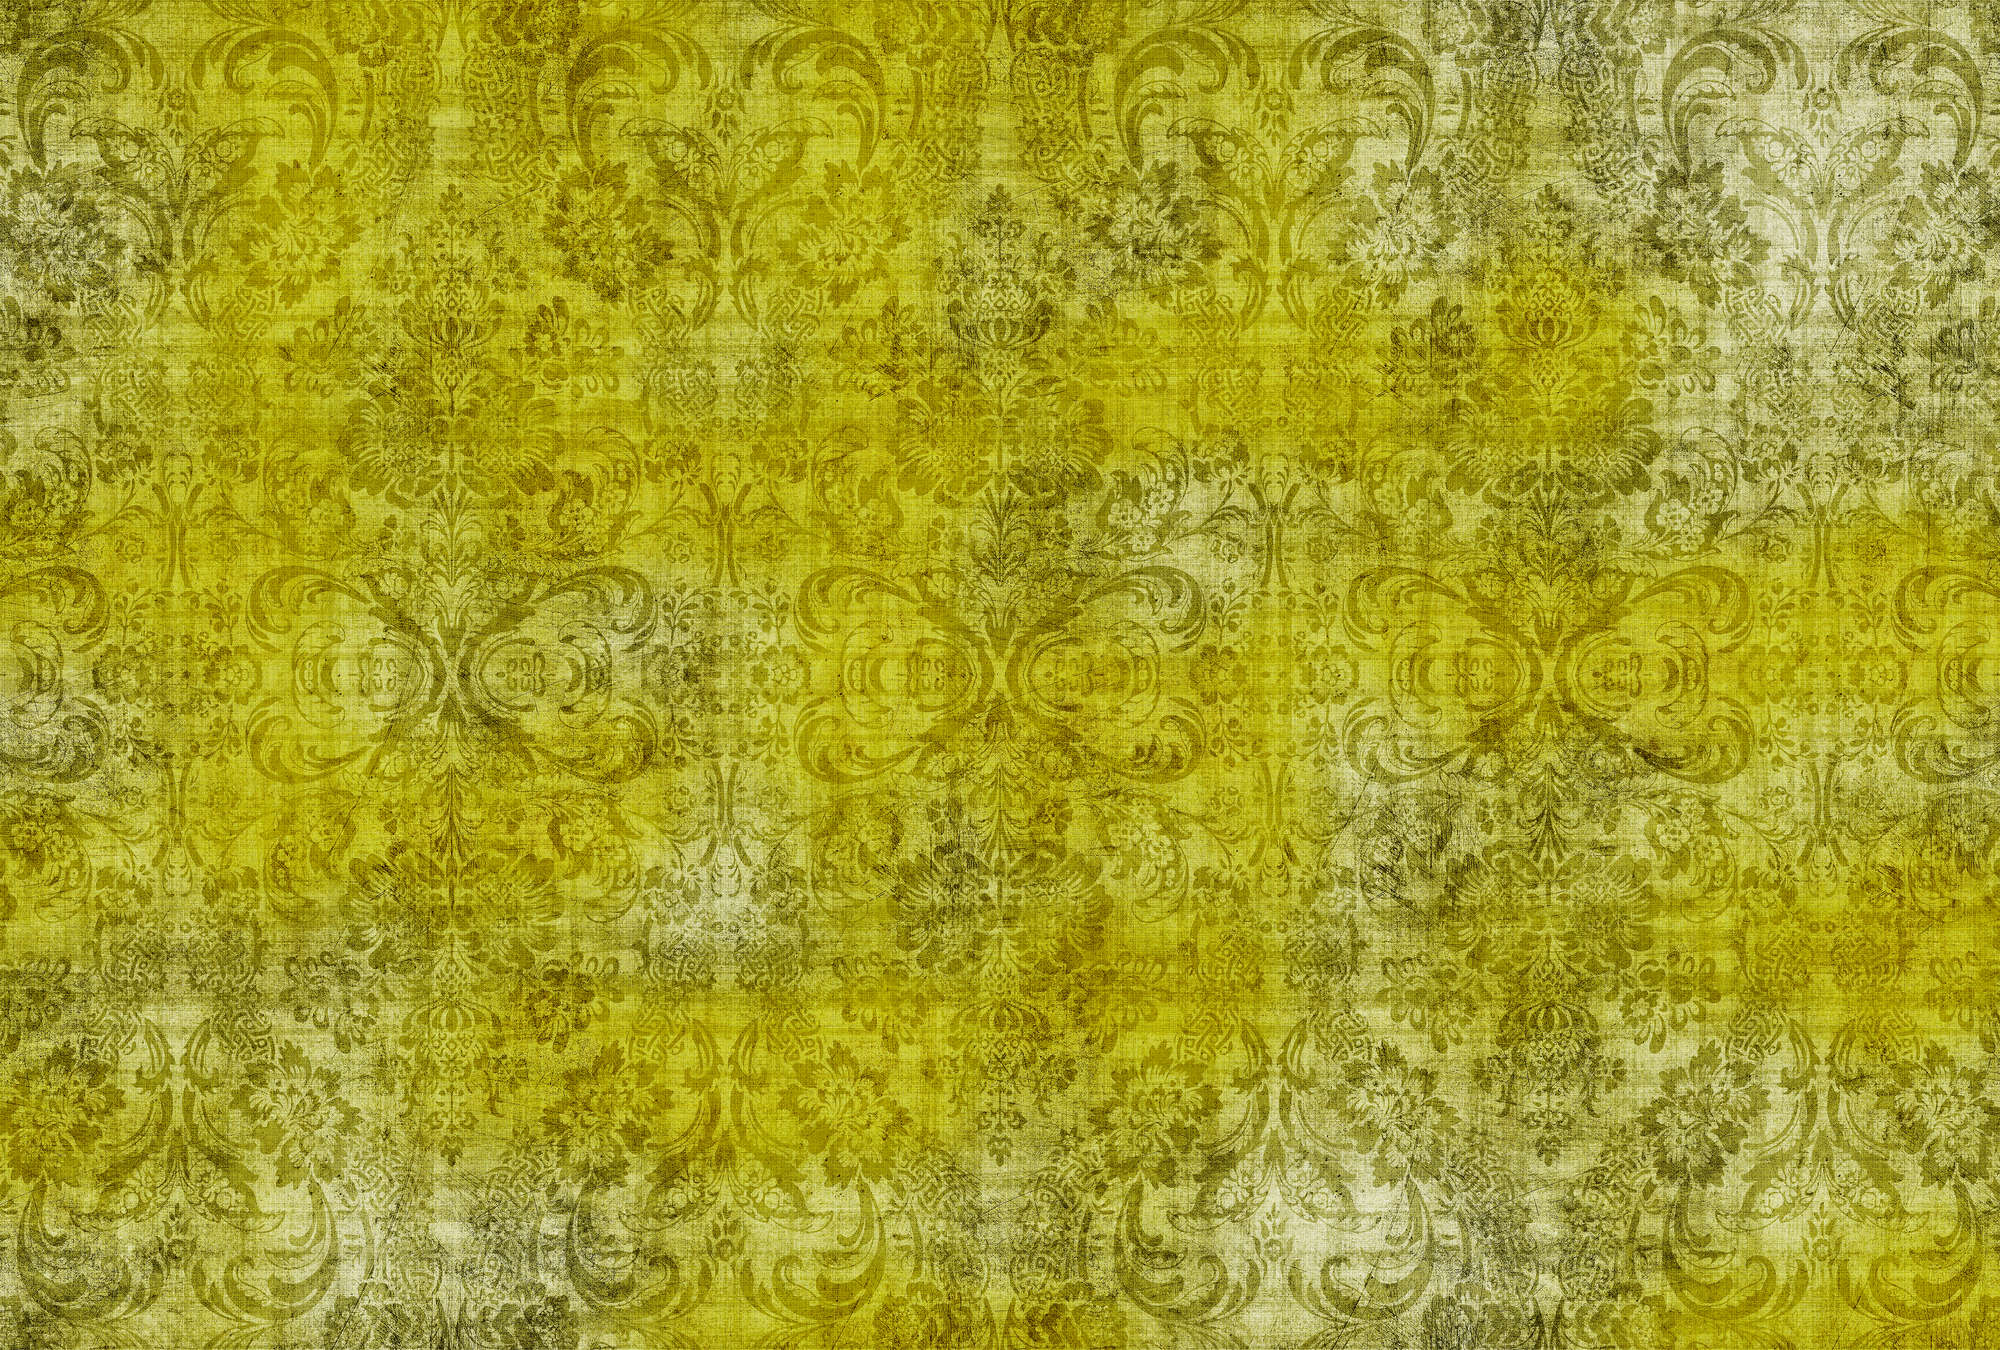             Old damask 1 - Ornements sur papier peint jaune chiné à structure lin naturel - jaune | structure intissé
        